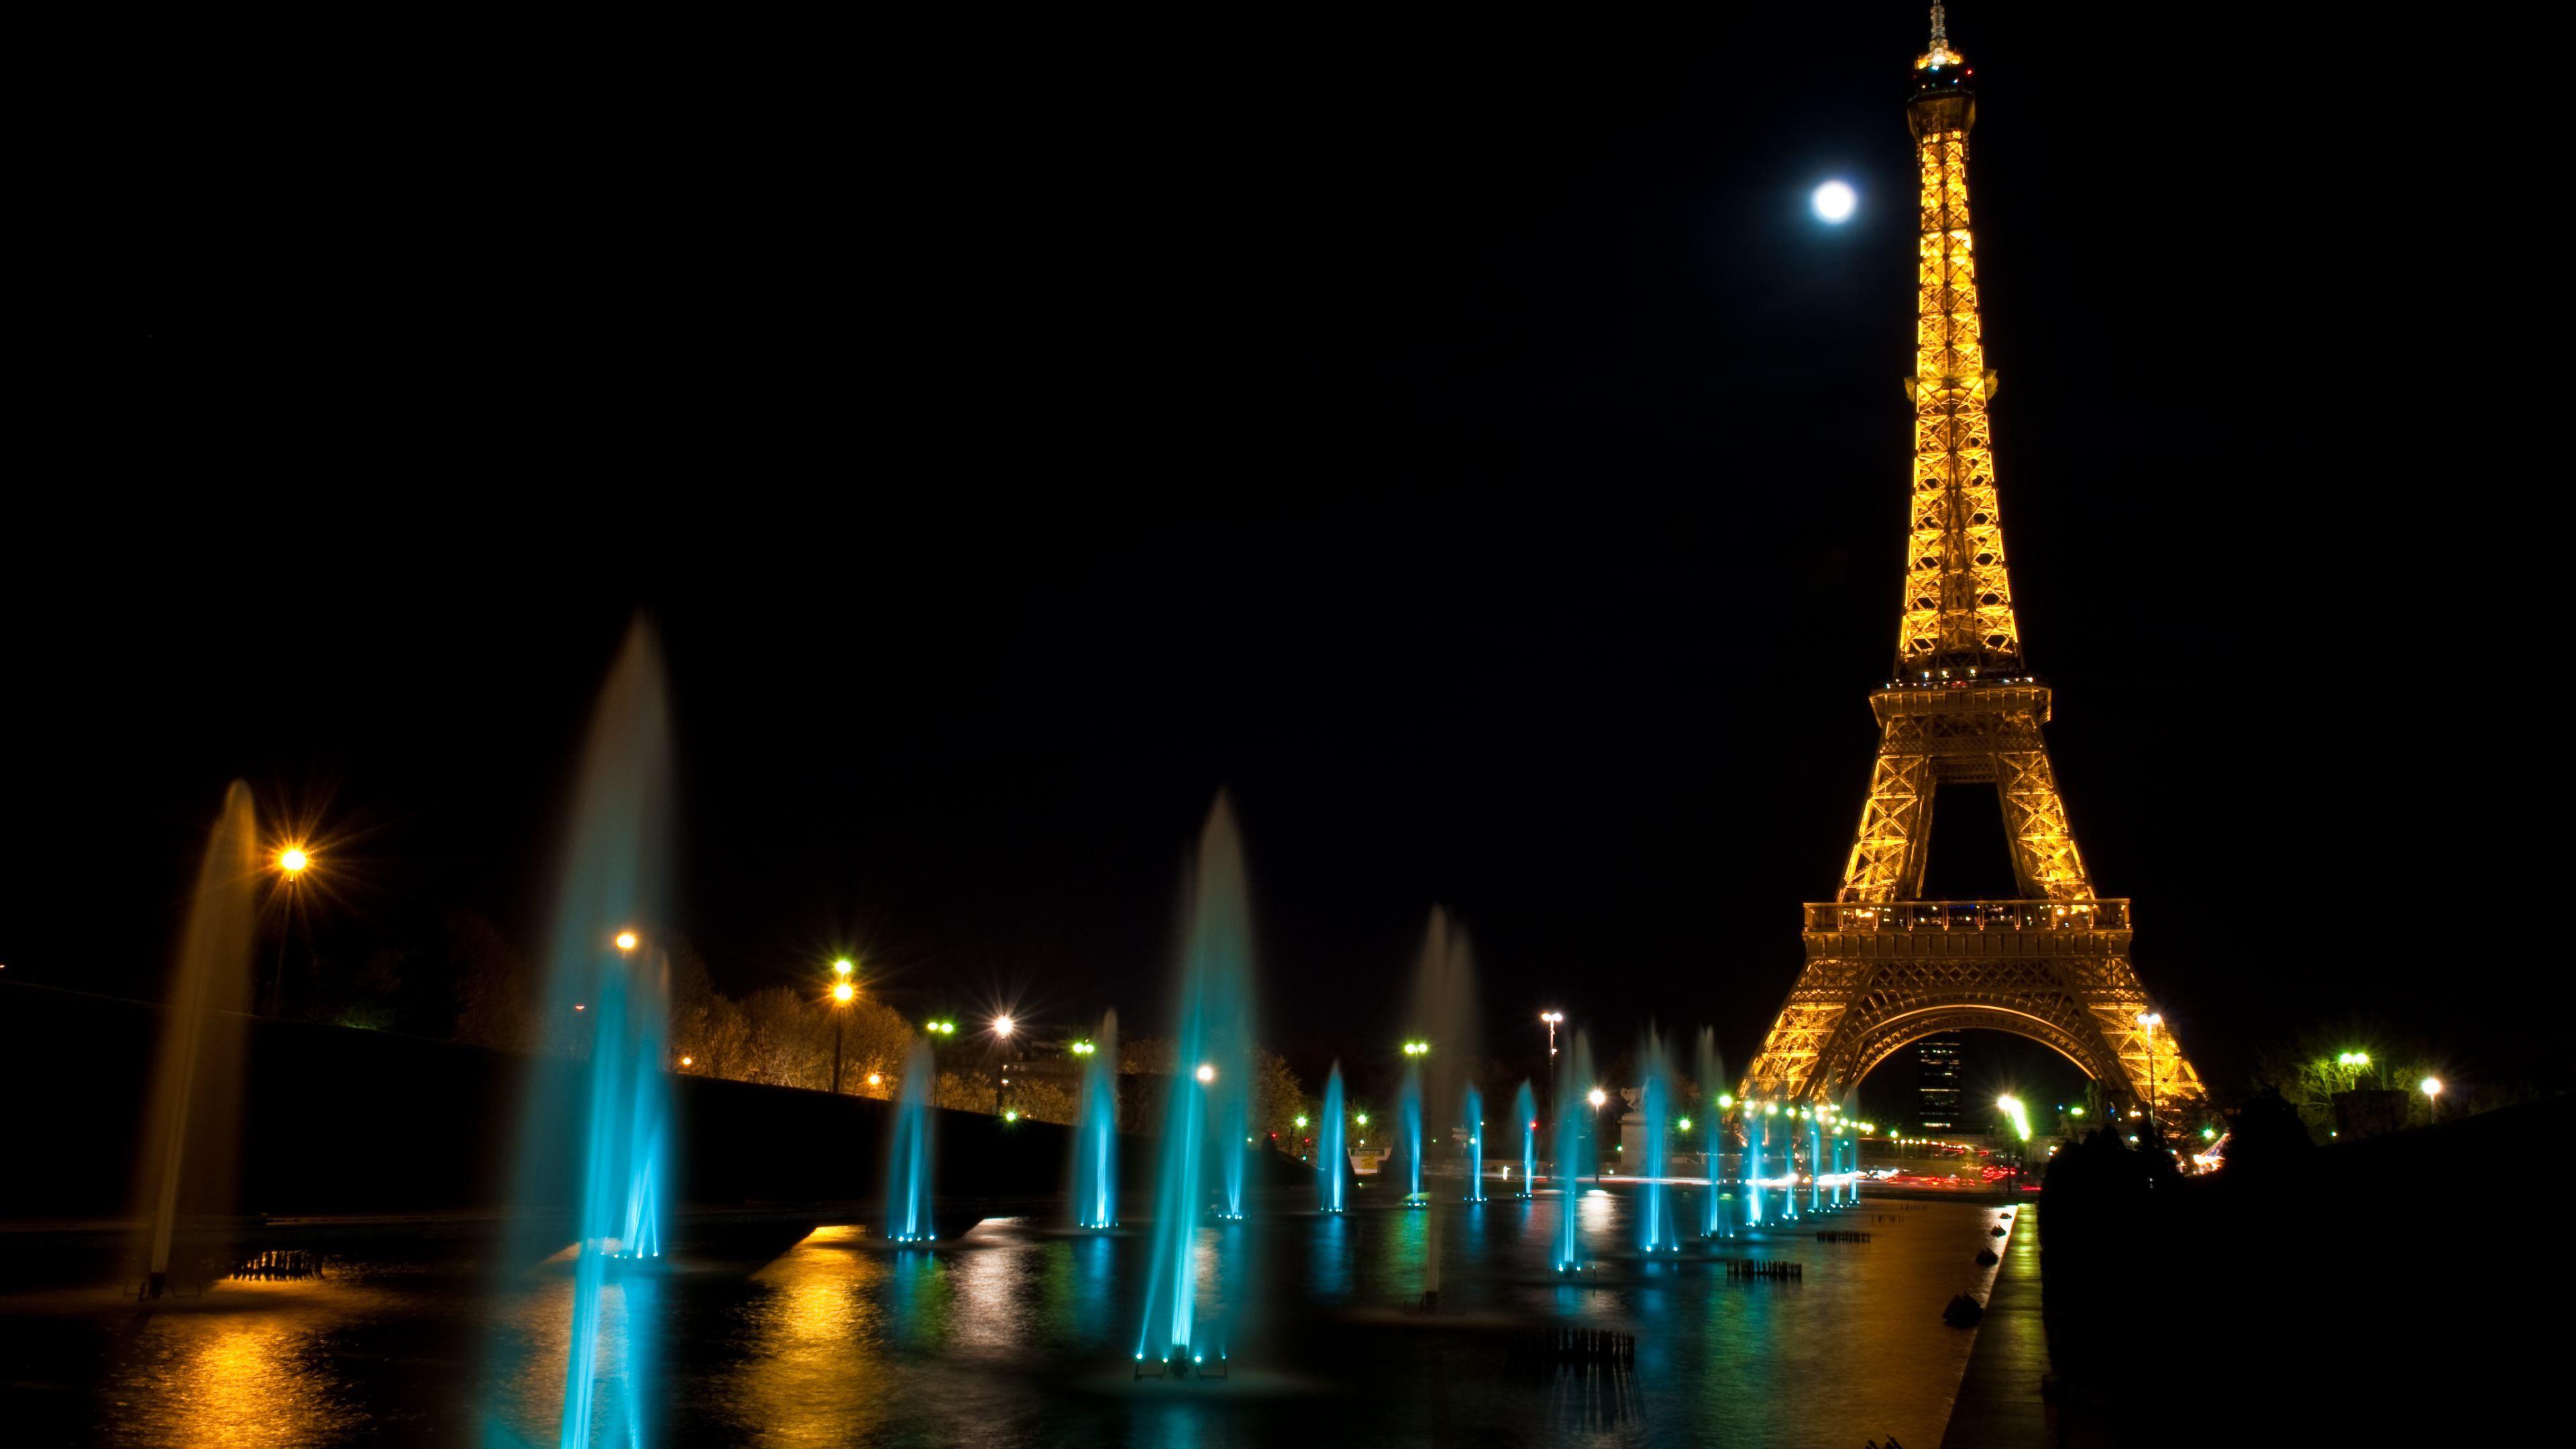 Paris at Night Wallpaper Free Paris at Night